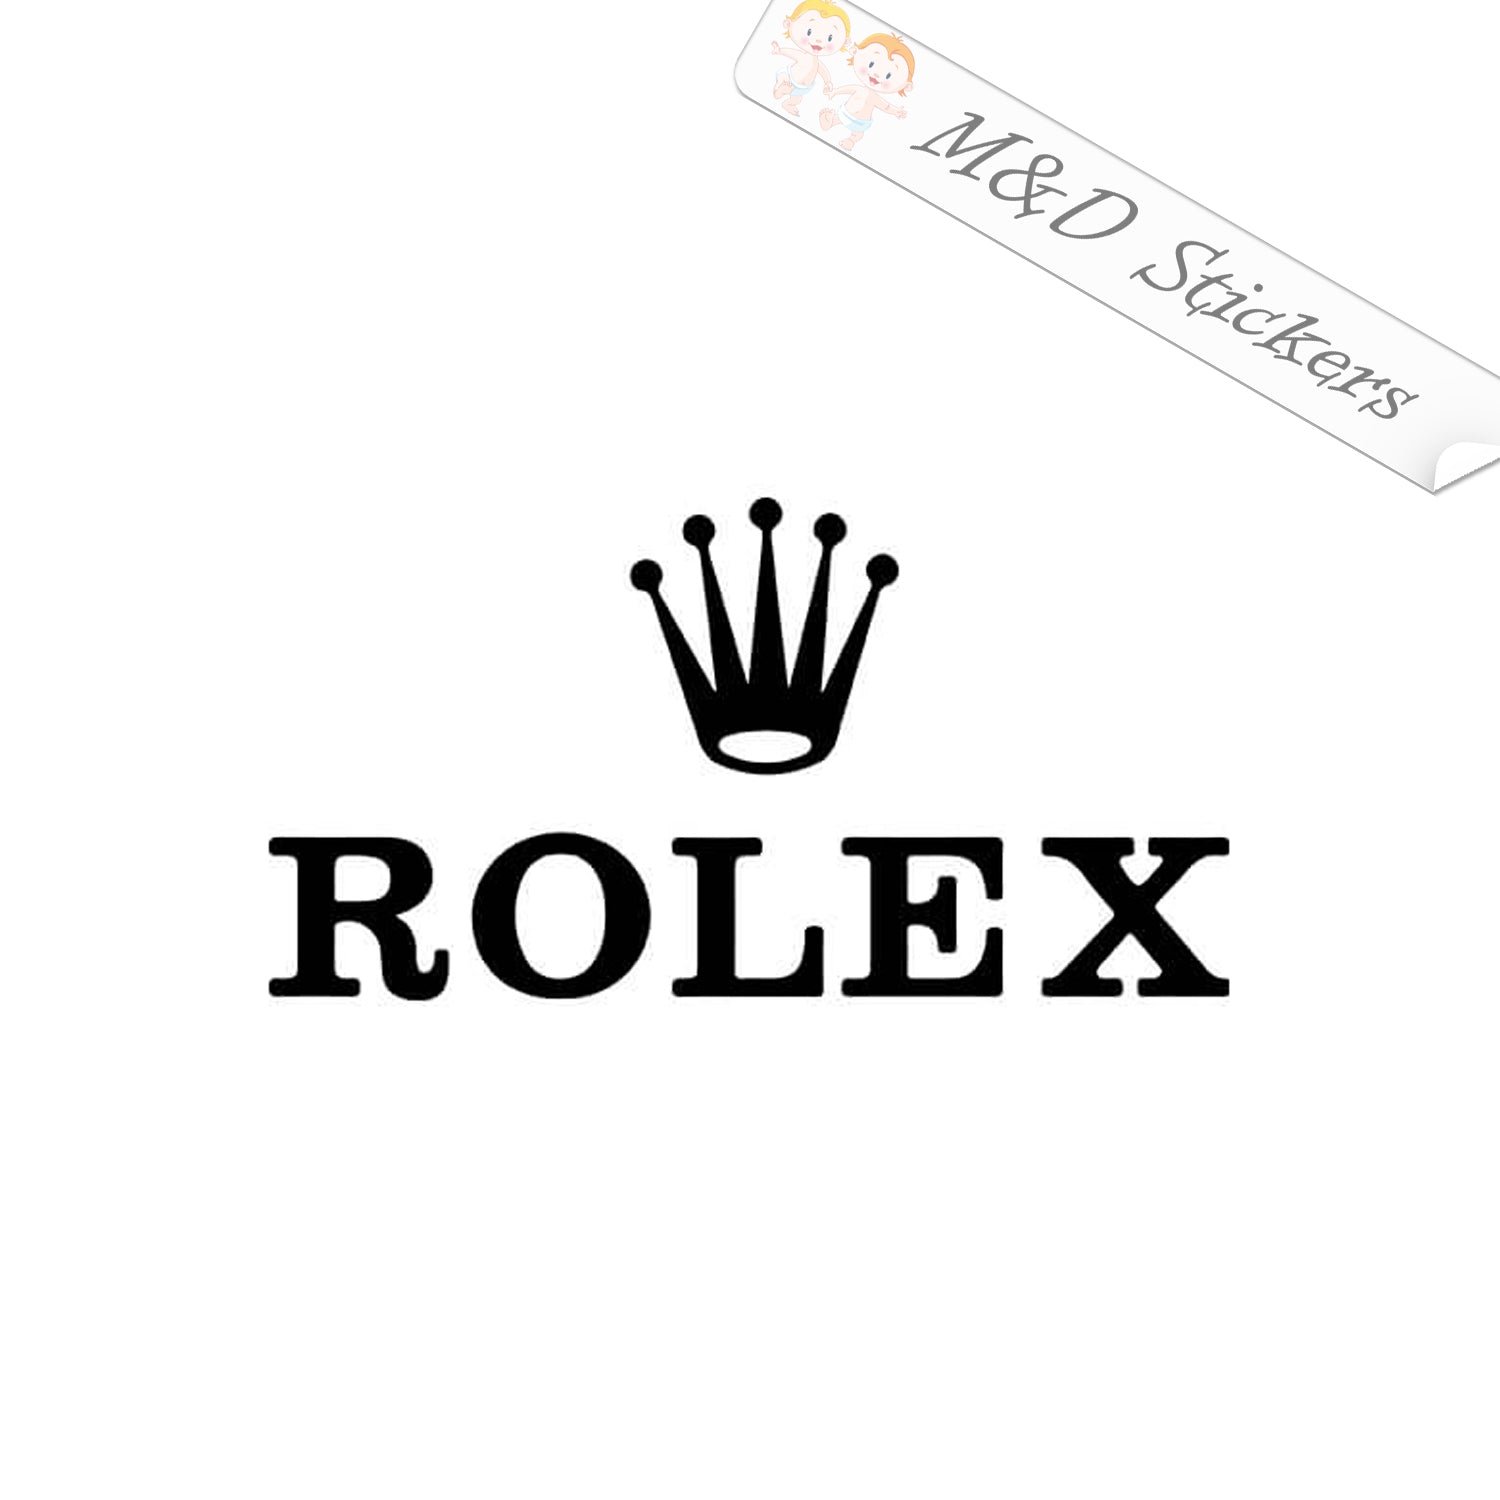 2x Rolex Logo Vinyl Decal Sticker 